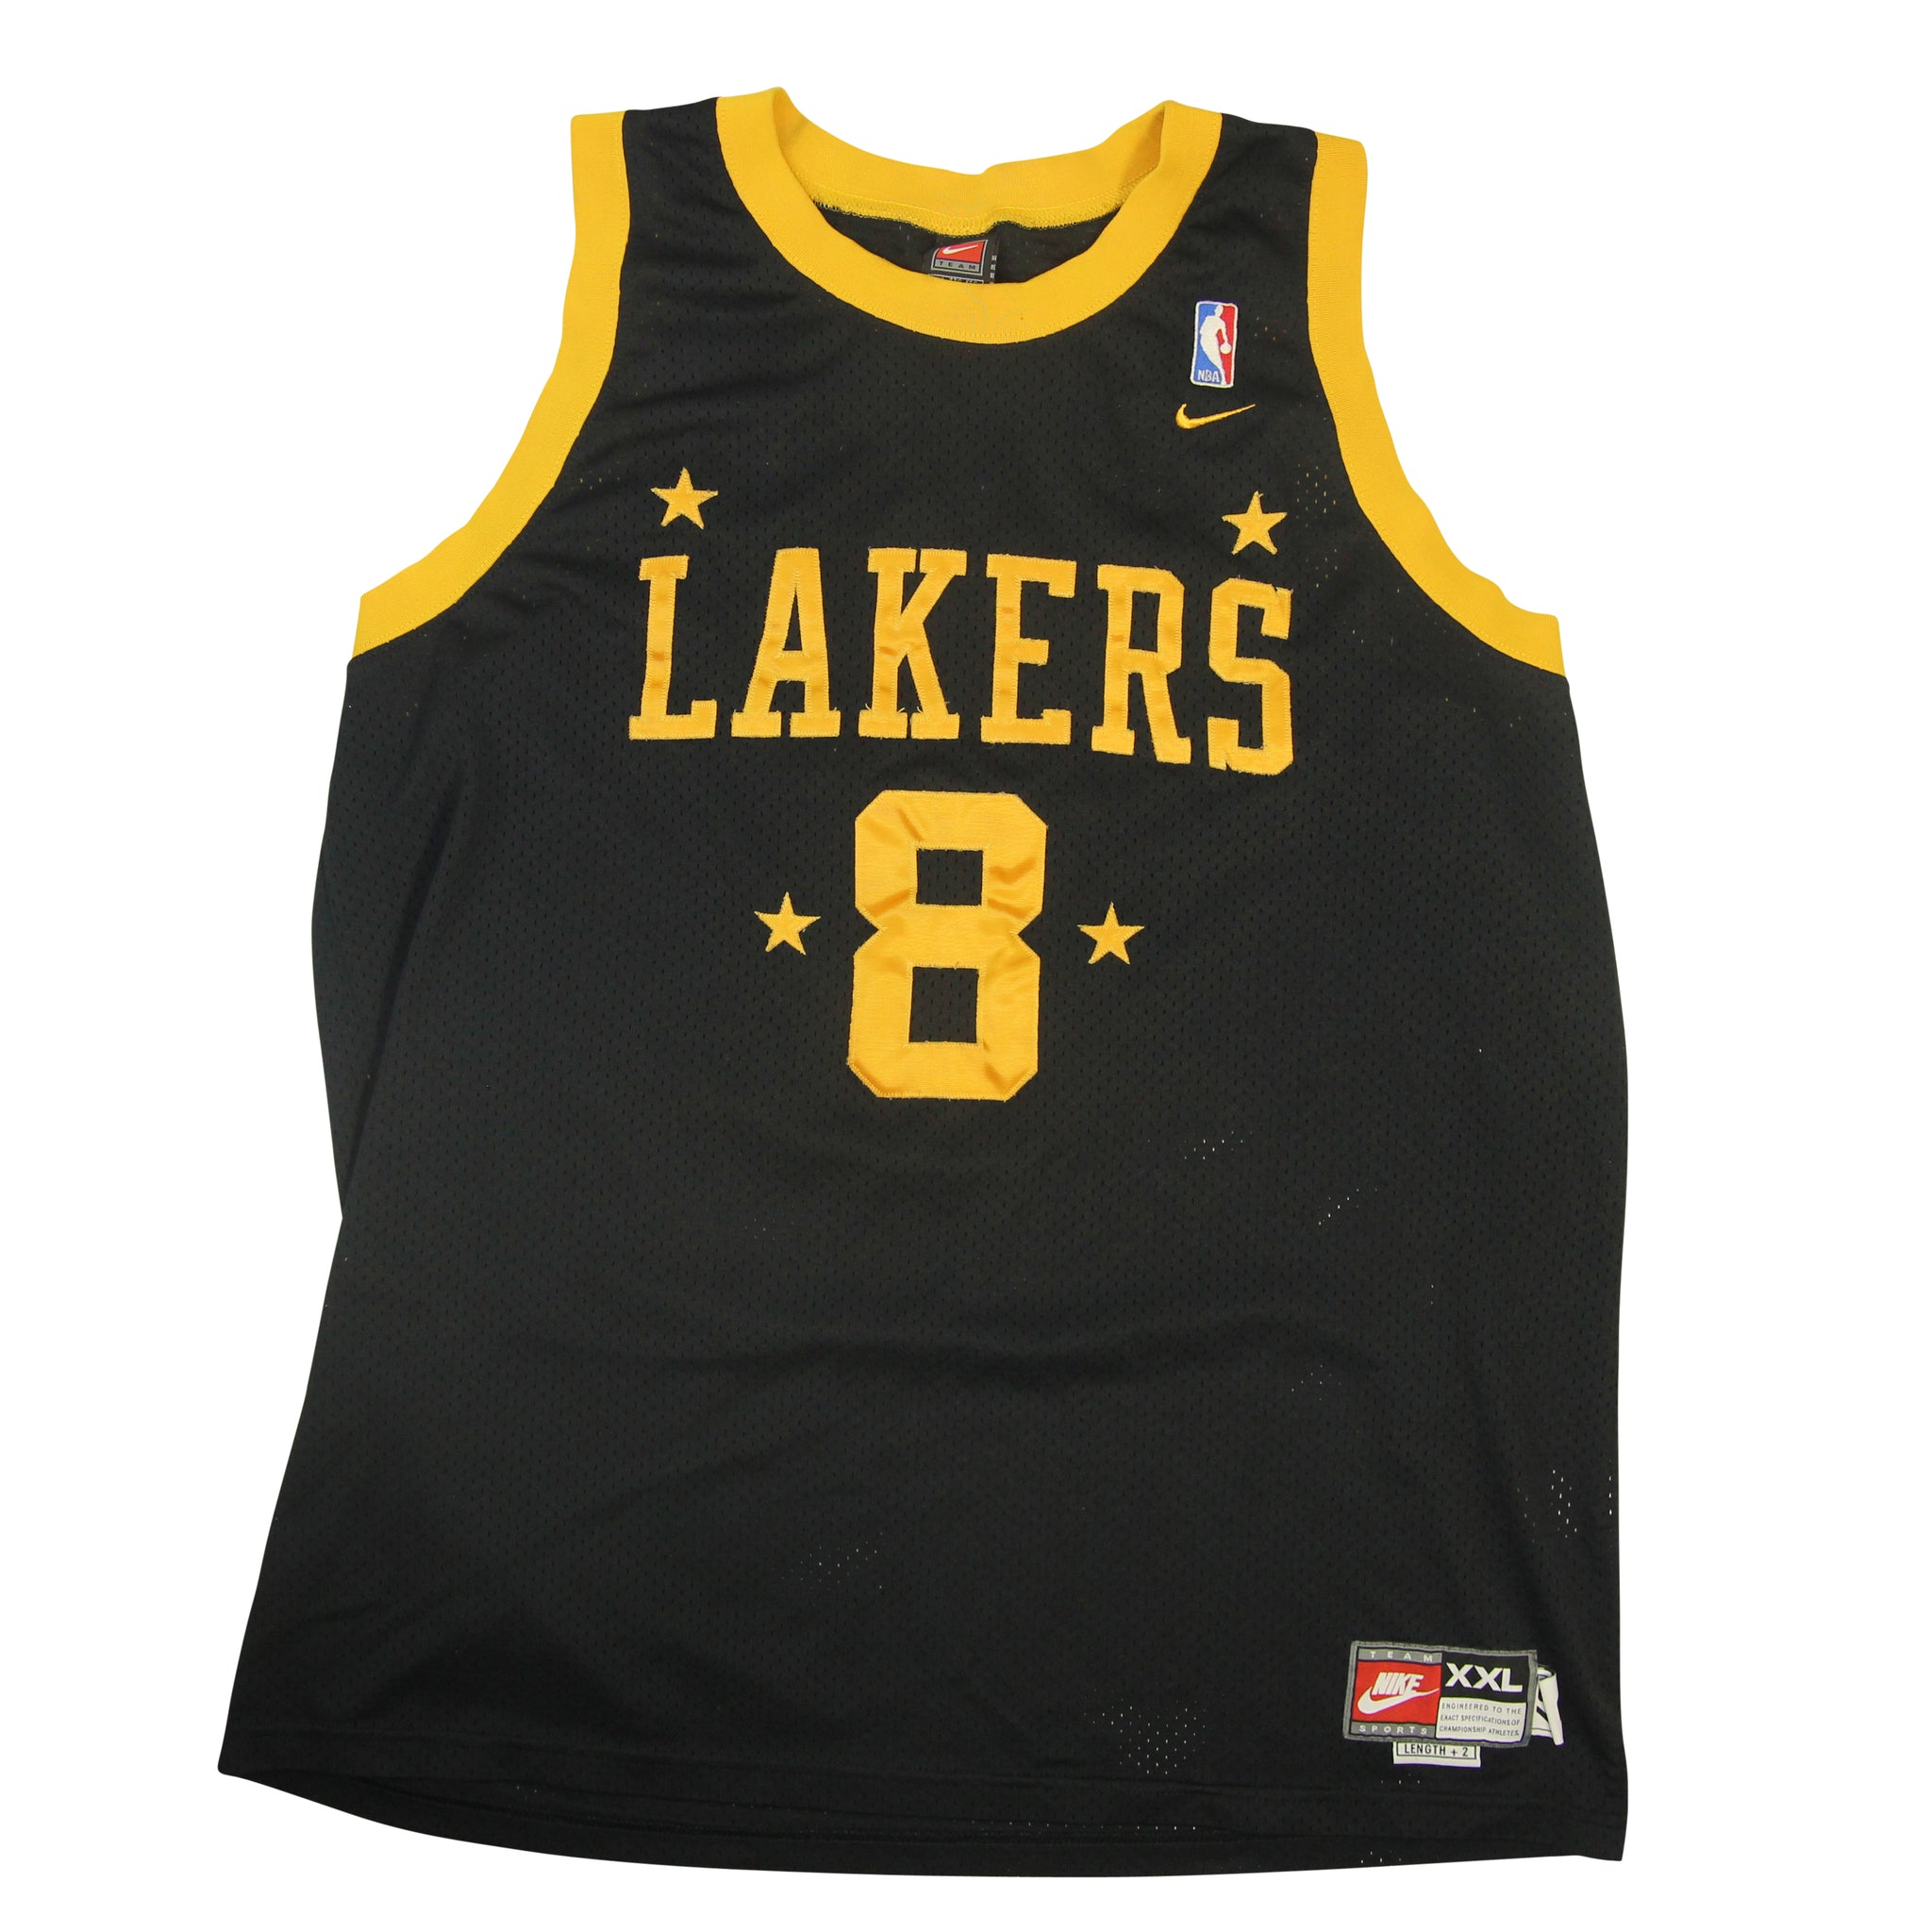 Kobe Bryant Los Angeles Lakers White Jersey Reebok XXL NBA